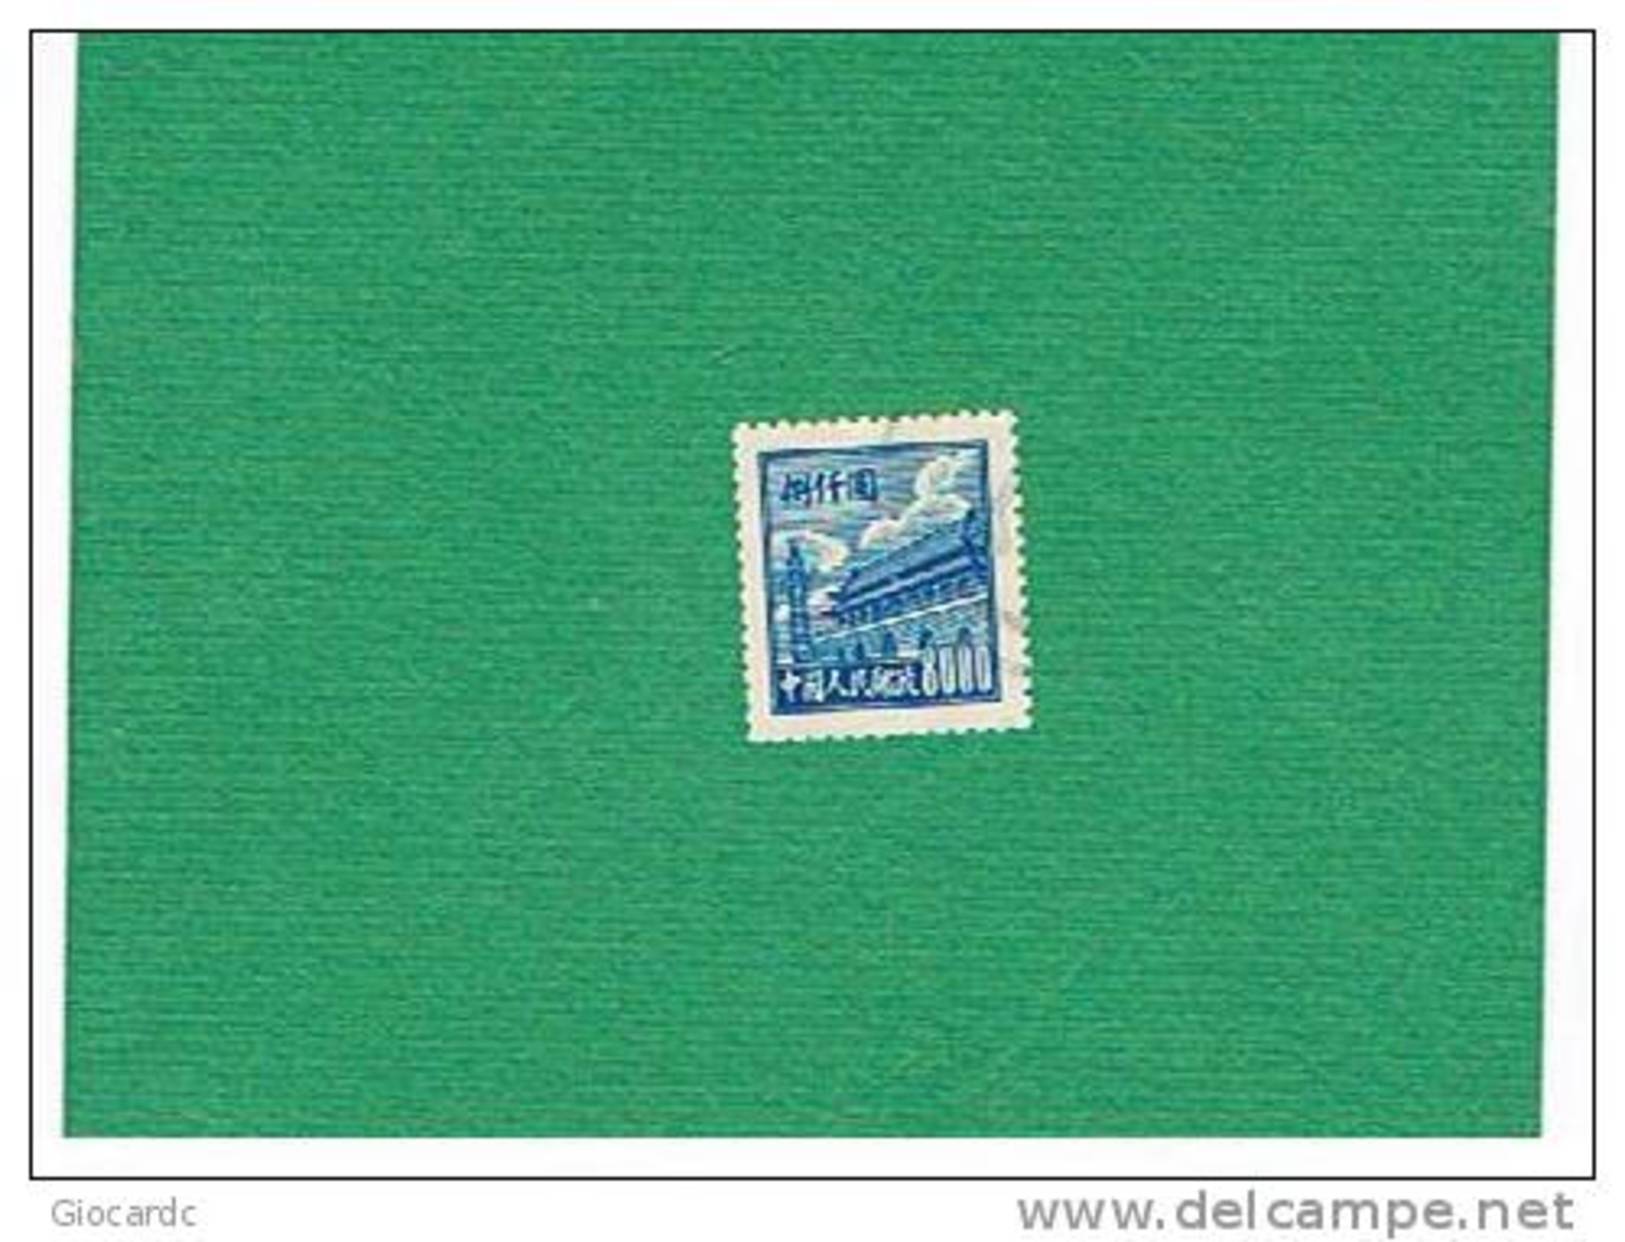 CINA (CHINA) - SG1419    - 1950 PORTA DELLA PACE CELESTE   -  USATO  (USED)° - Gebraucht